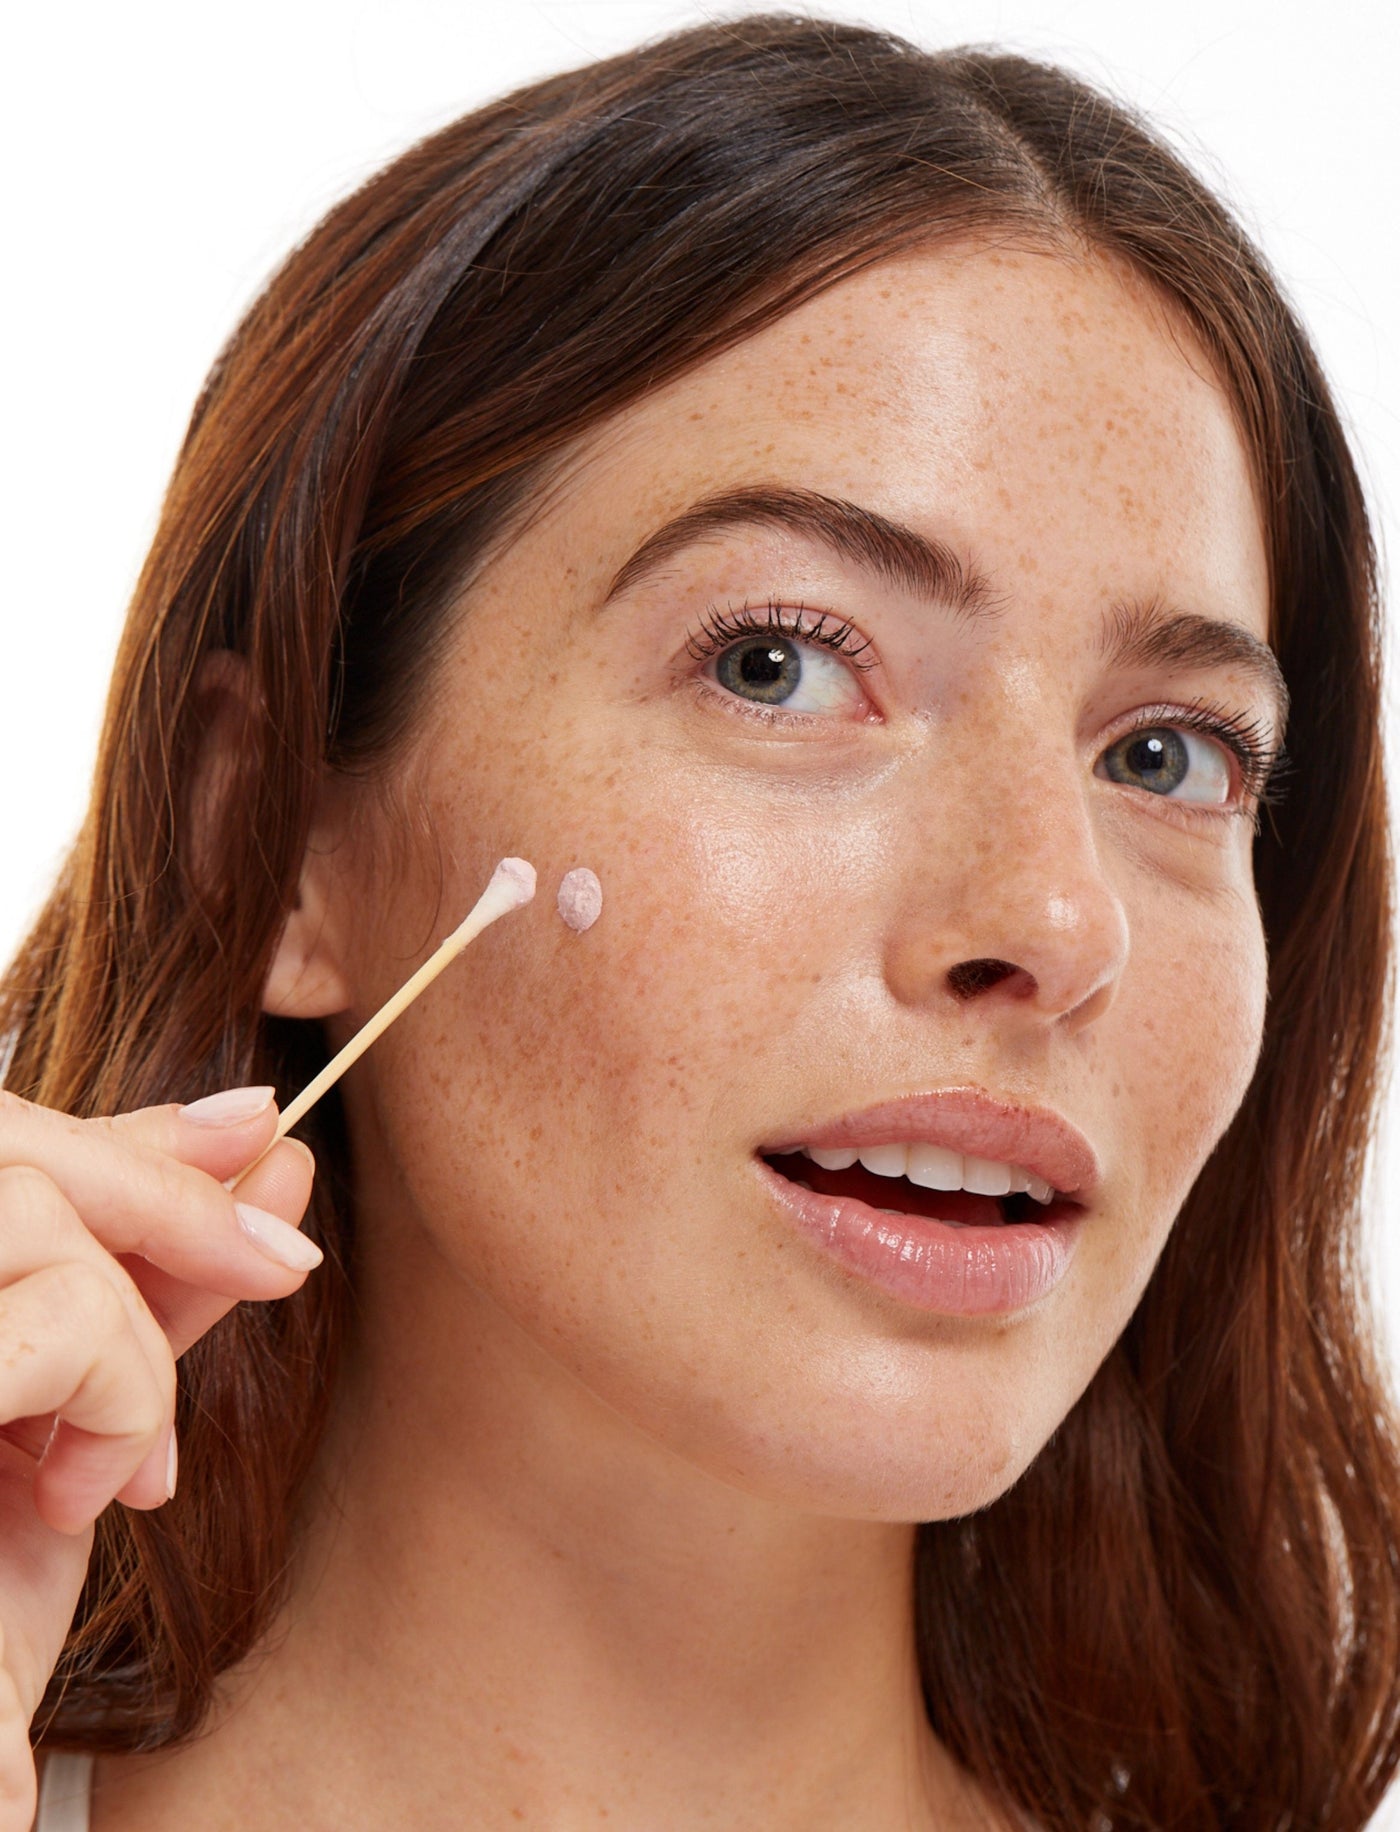 Loción de Skincare para el Control de brotes de acné de manera rápida y efectiva